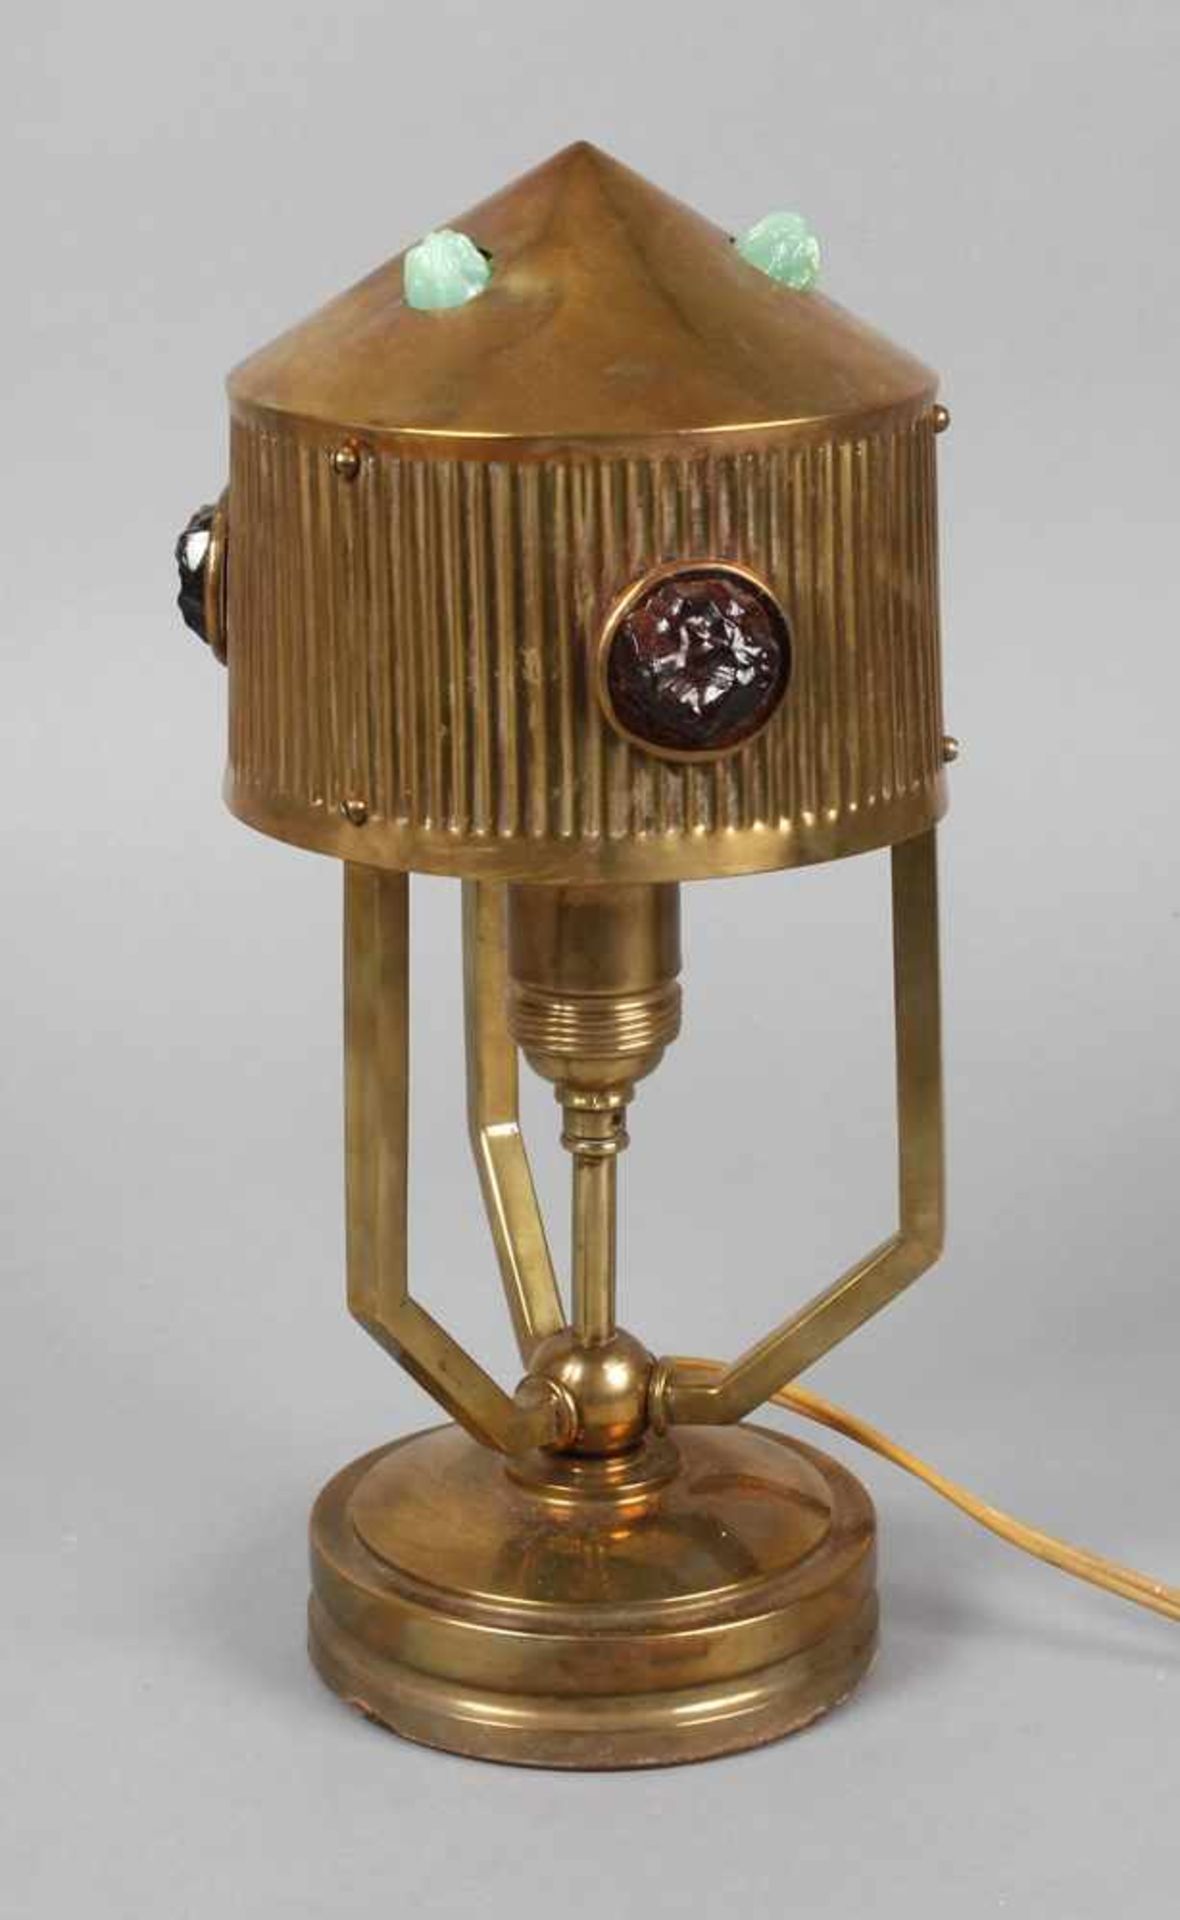 Jugendstil-Tischlampe wohl Berlin, um 1905, Messing getrieben, beschwerter Rundfuß mit zentraler